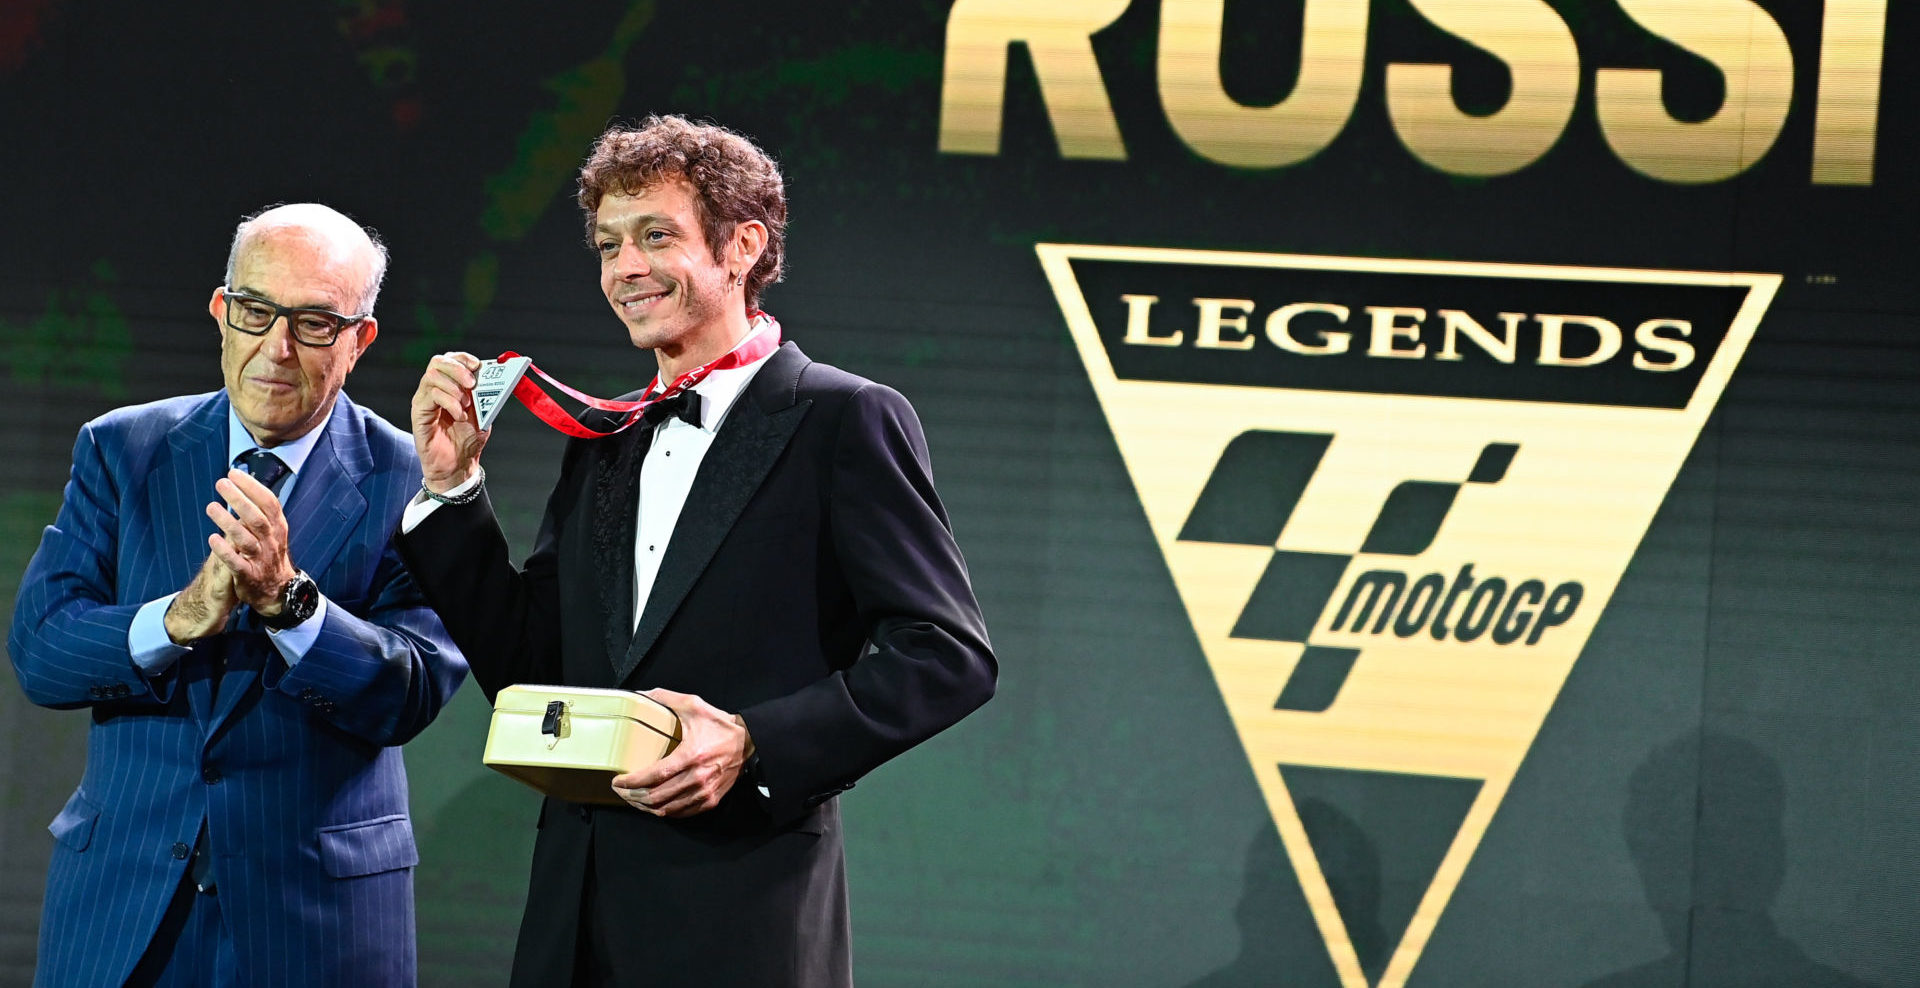 Dorna CEO Carmelo Ezpeleta (left) presents Valentino Rossi (right) with his MotoGP Legends medal. Photo courtesy Dorna.